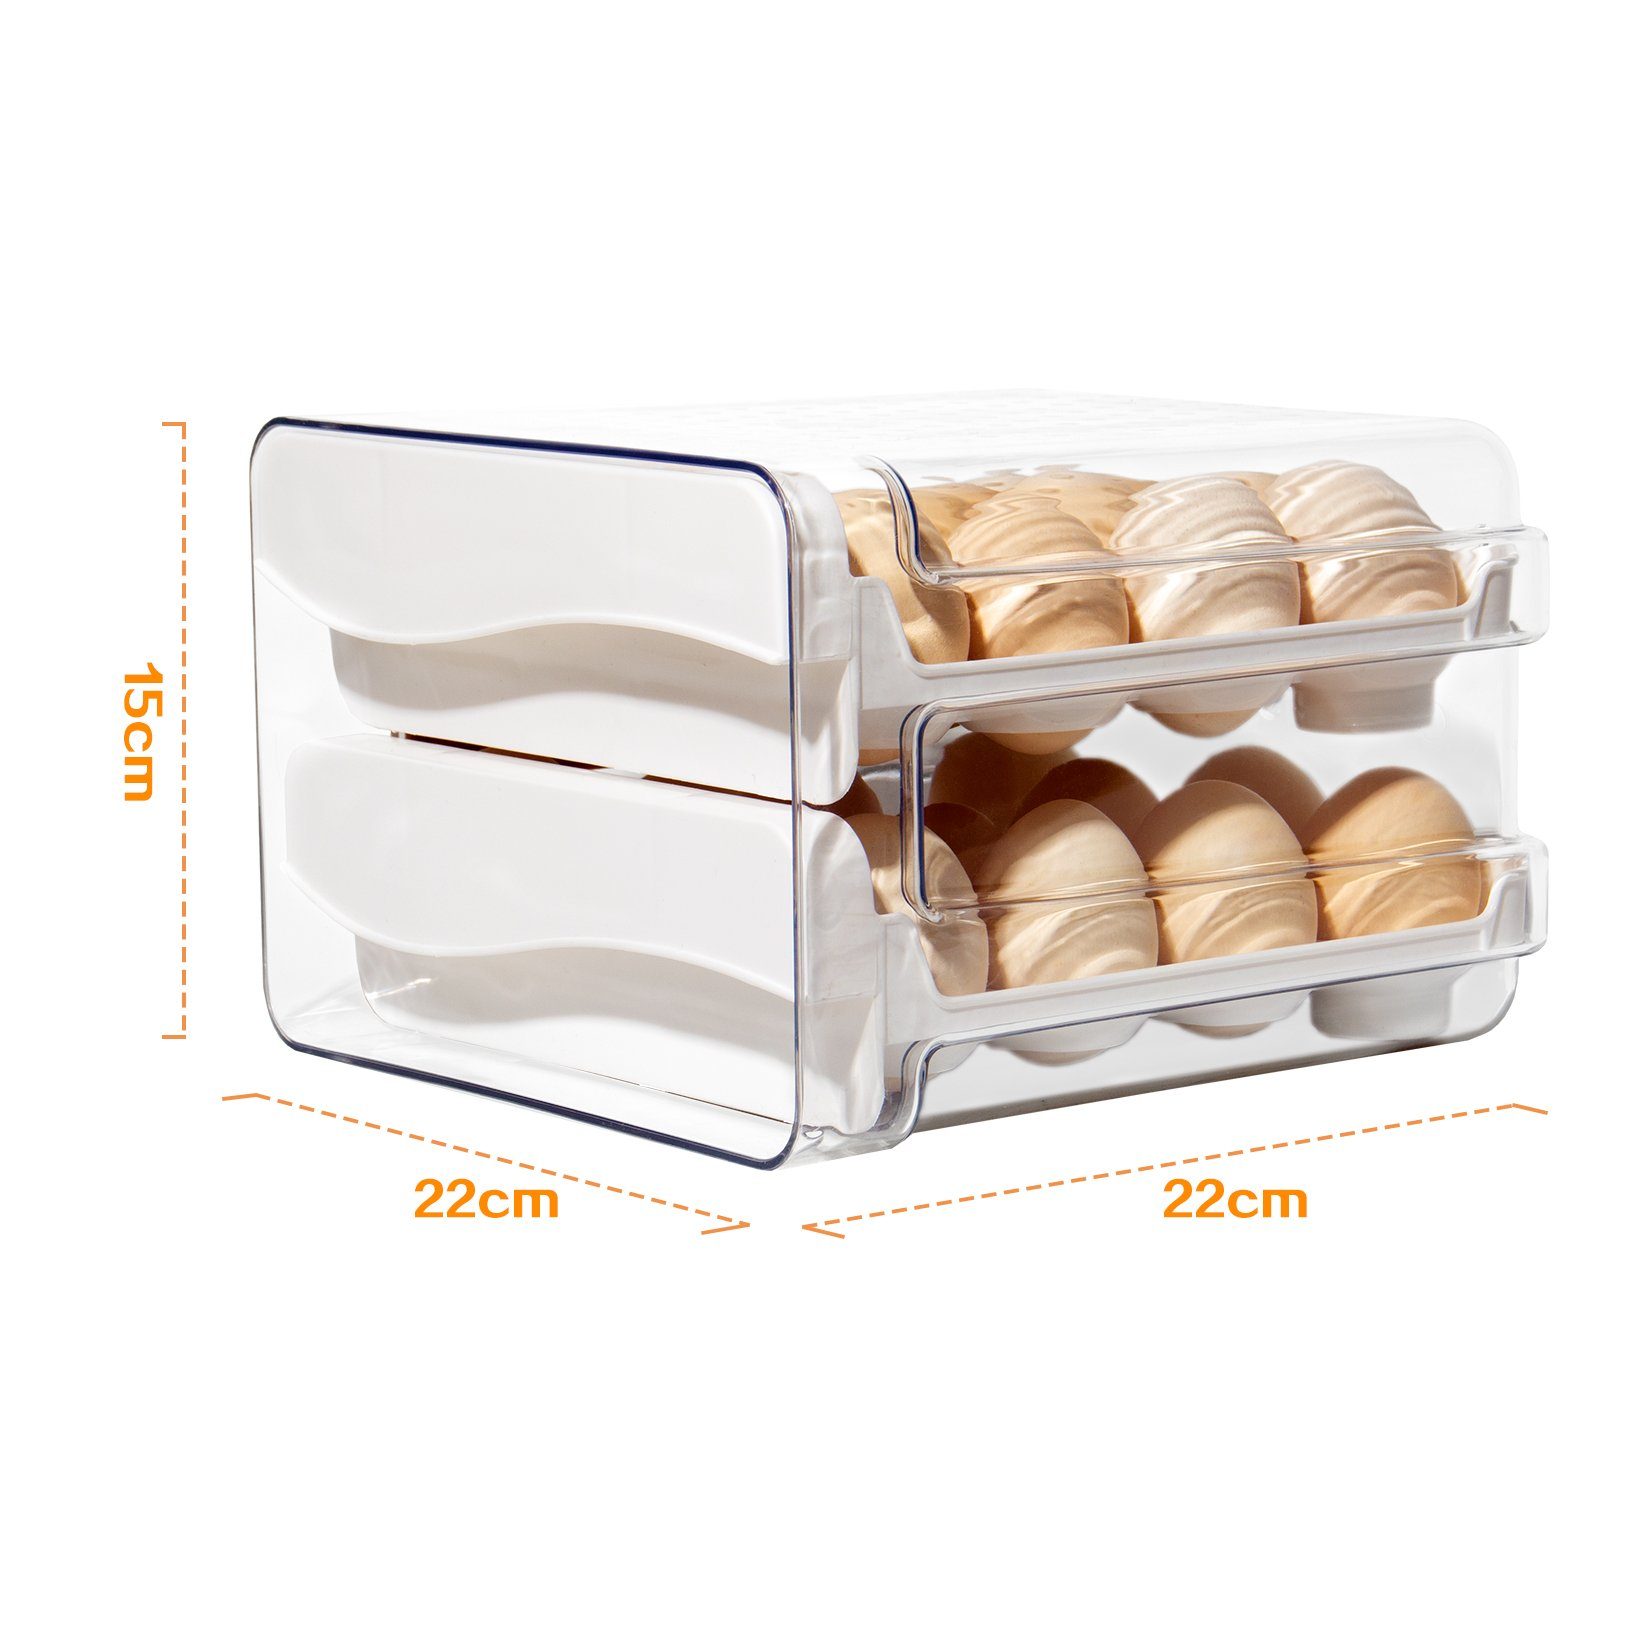 Eierkarton eier, große 32 (STEG-232), Doppelter Eier mit Eierbox für Zeitschaltuhr, Eierkorb Eierbehälter Weiß, Aufbewahrung Zedelmaier Kühlschrank